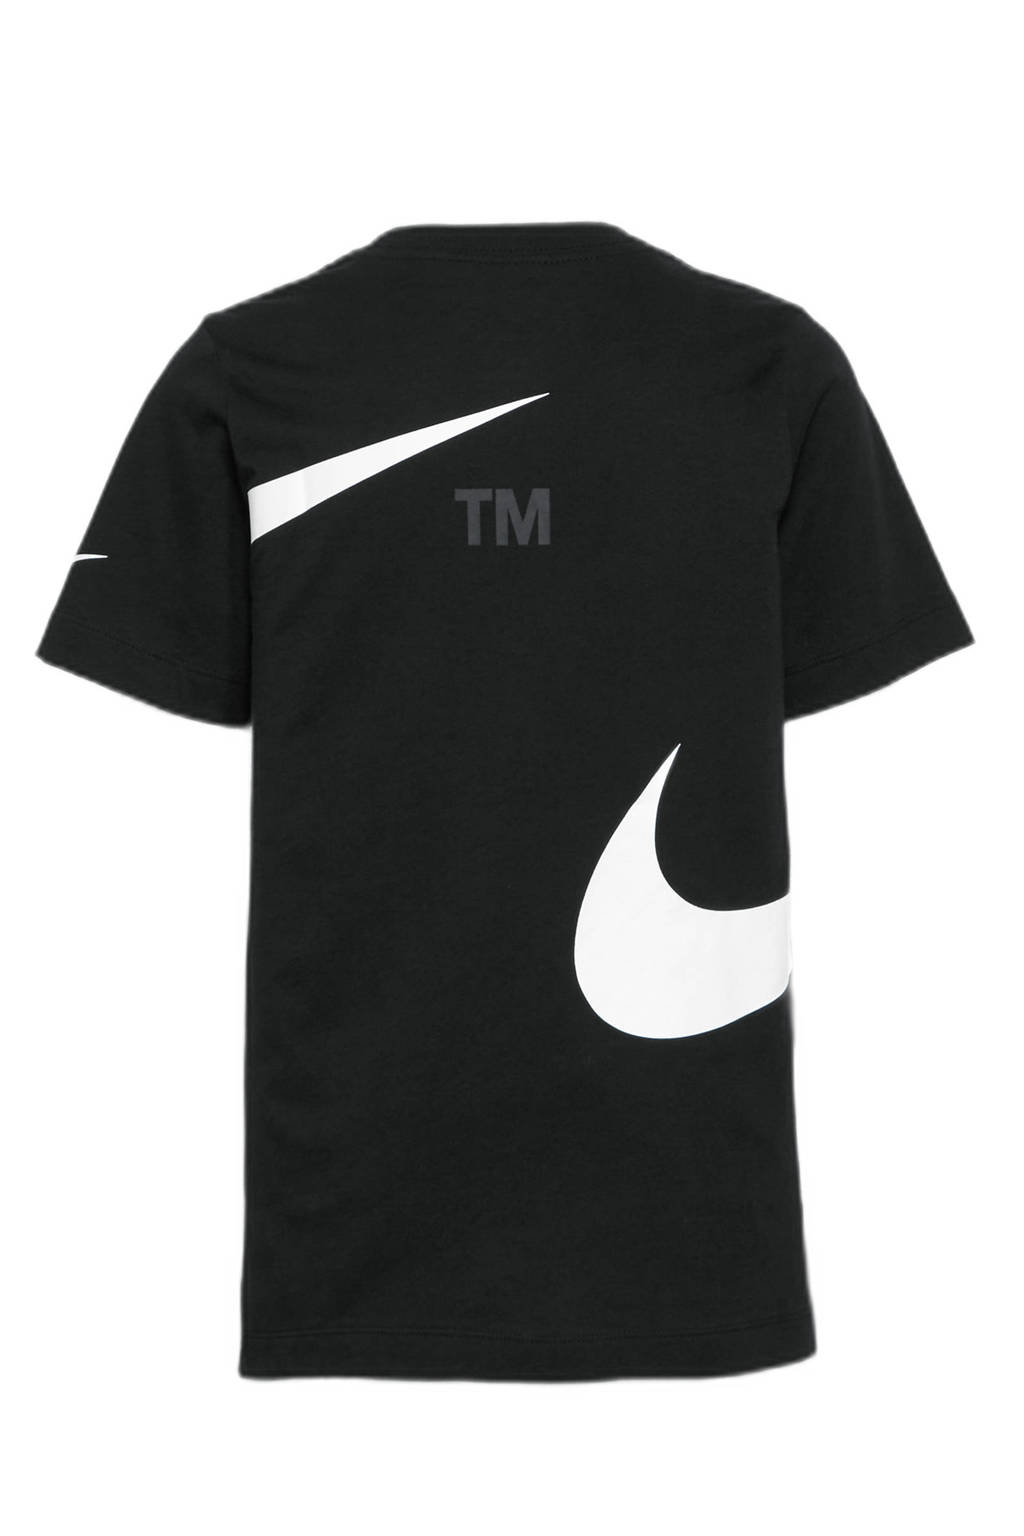 Nike T-shirt met logo zwart, Zwart